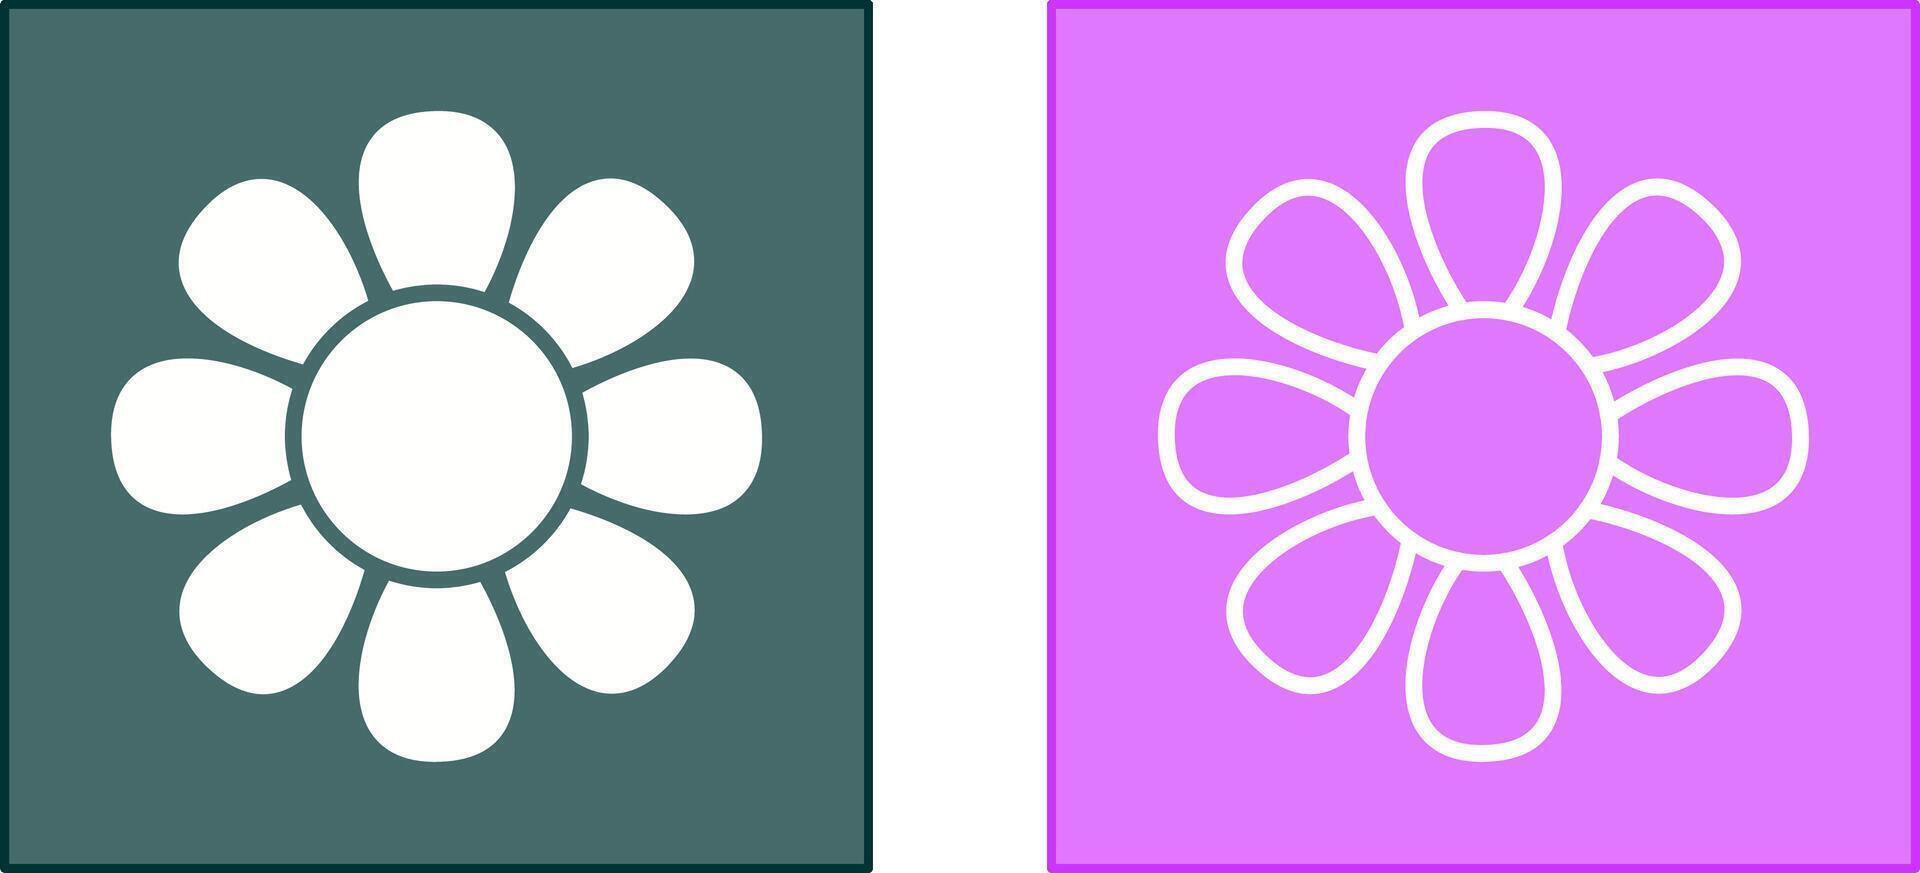 diseño de icono de flor vector